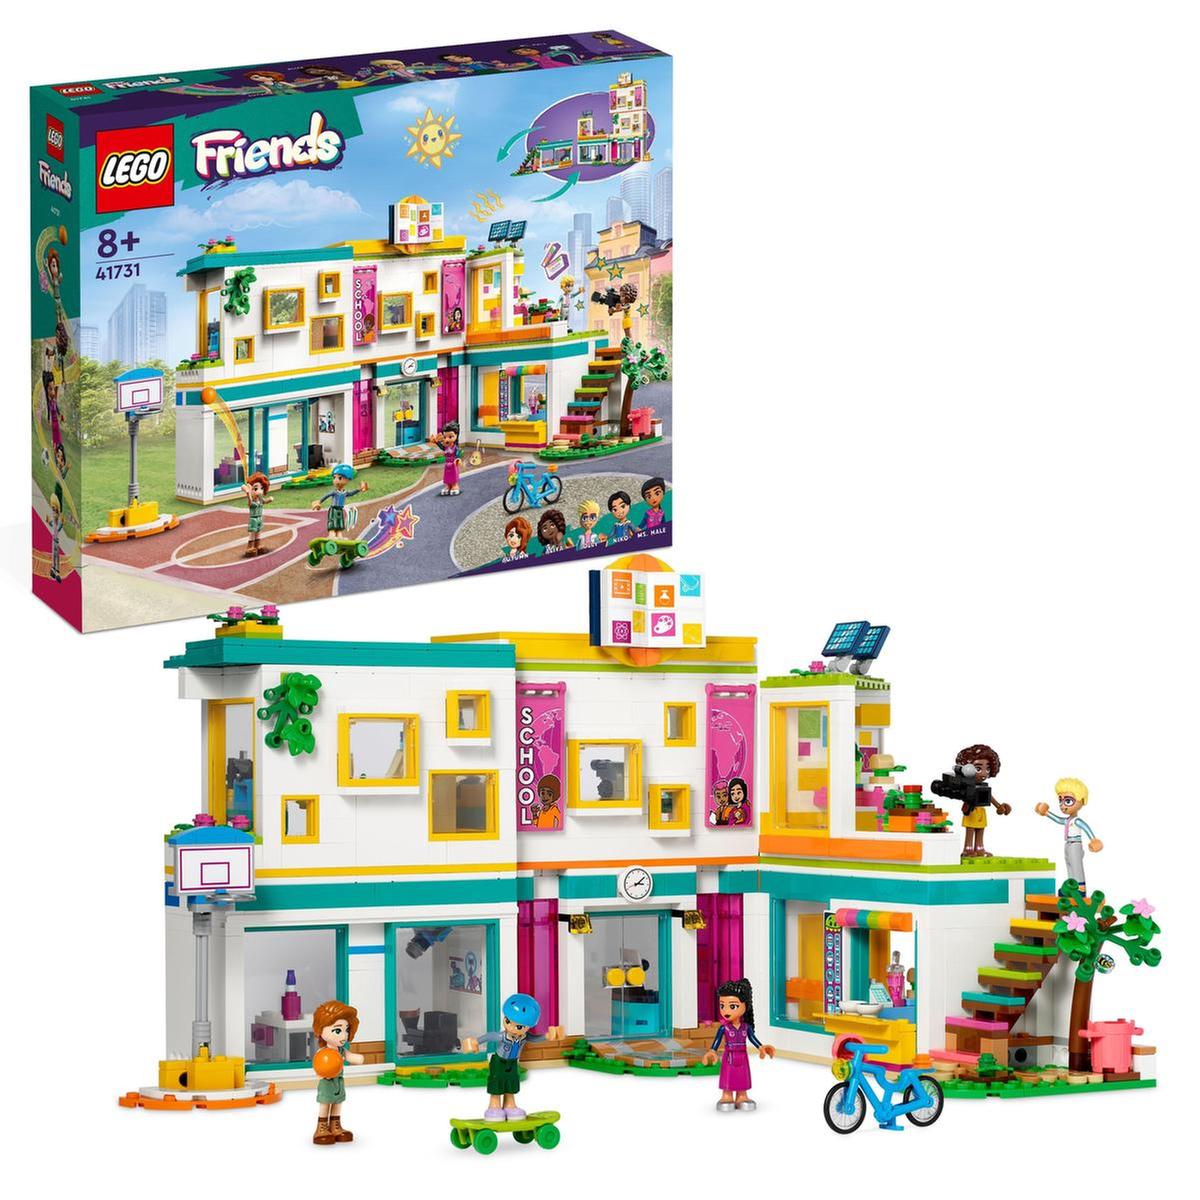 LEGO Friends - internacional de Heartlake - 41731 | Lego Friends | Toys"R"Us España